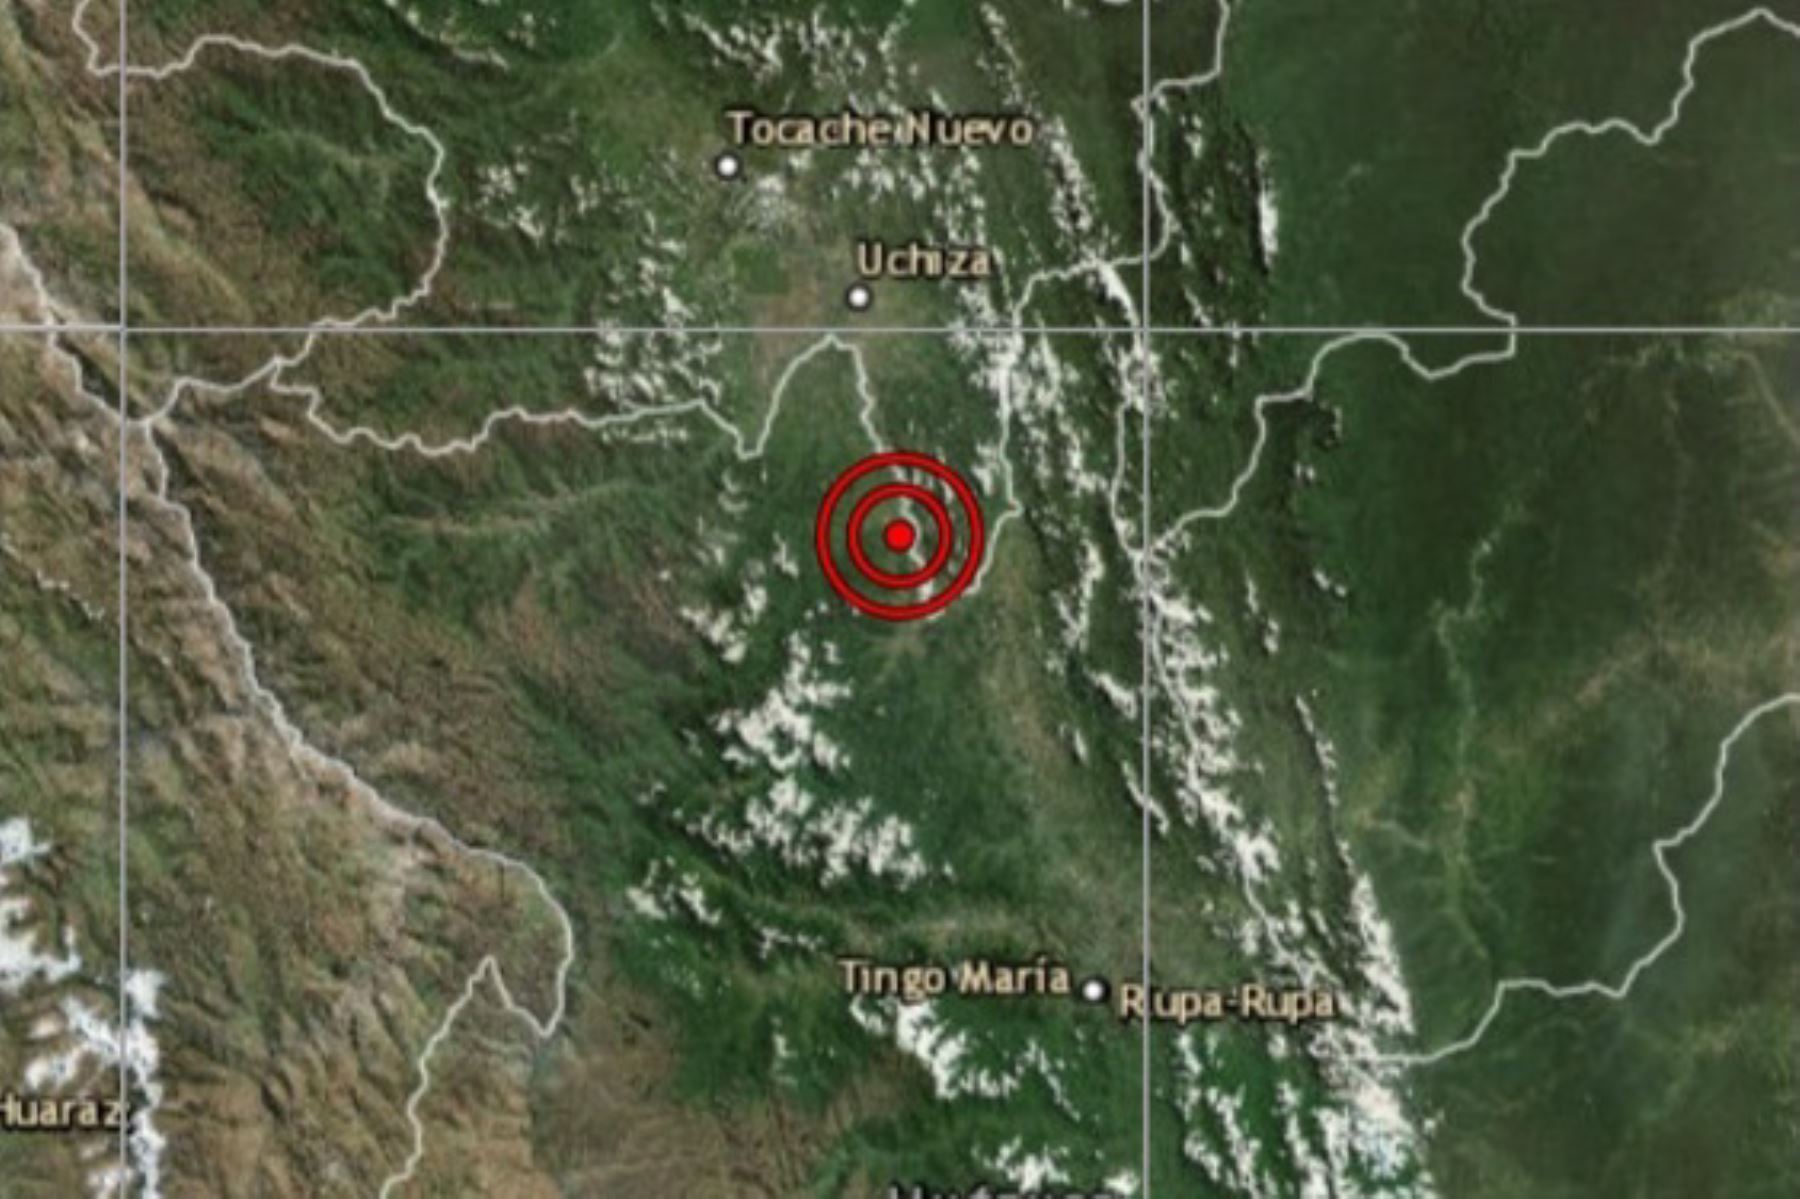 Sismo de magnitud 4.0 afectó el distrito de Uchiza, al sur de la región San Martín.